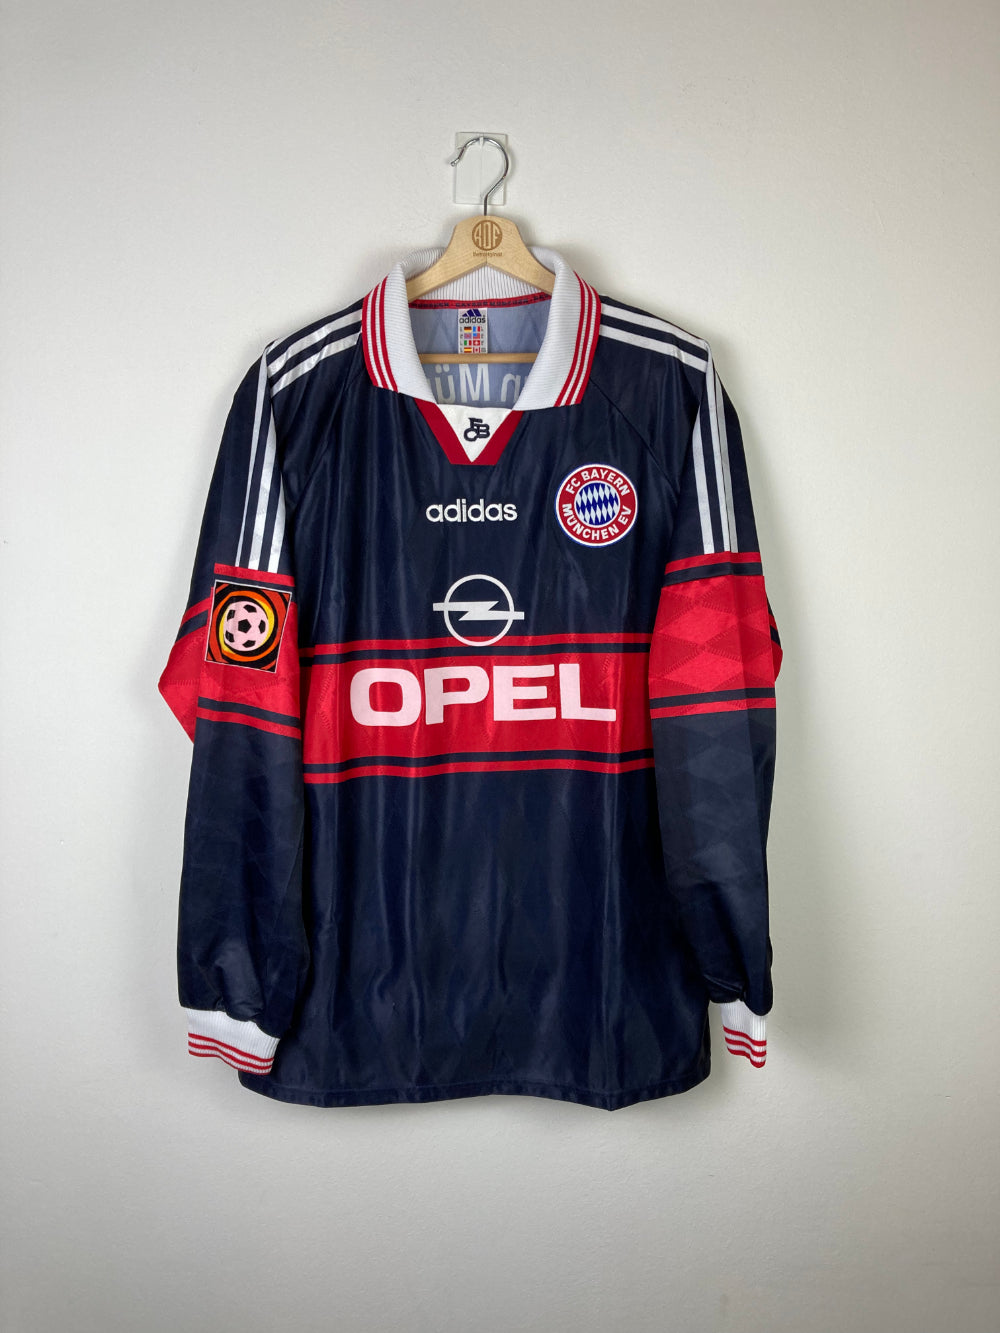 bayern munich 1998 jersey